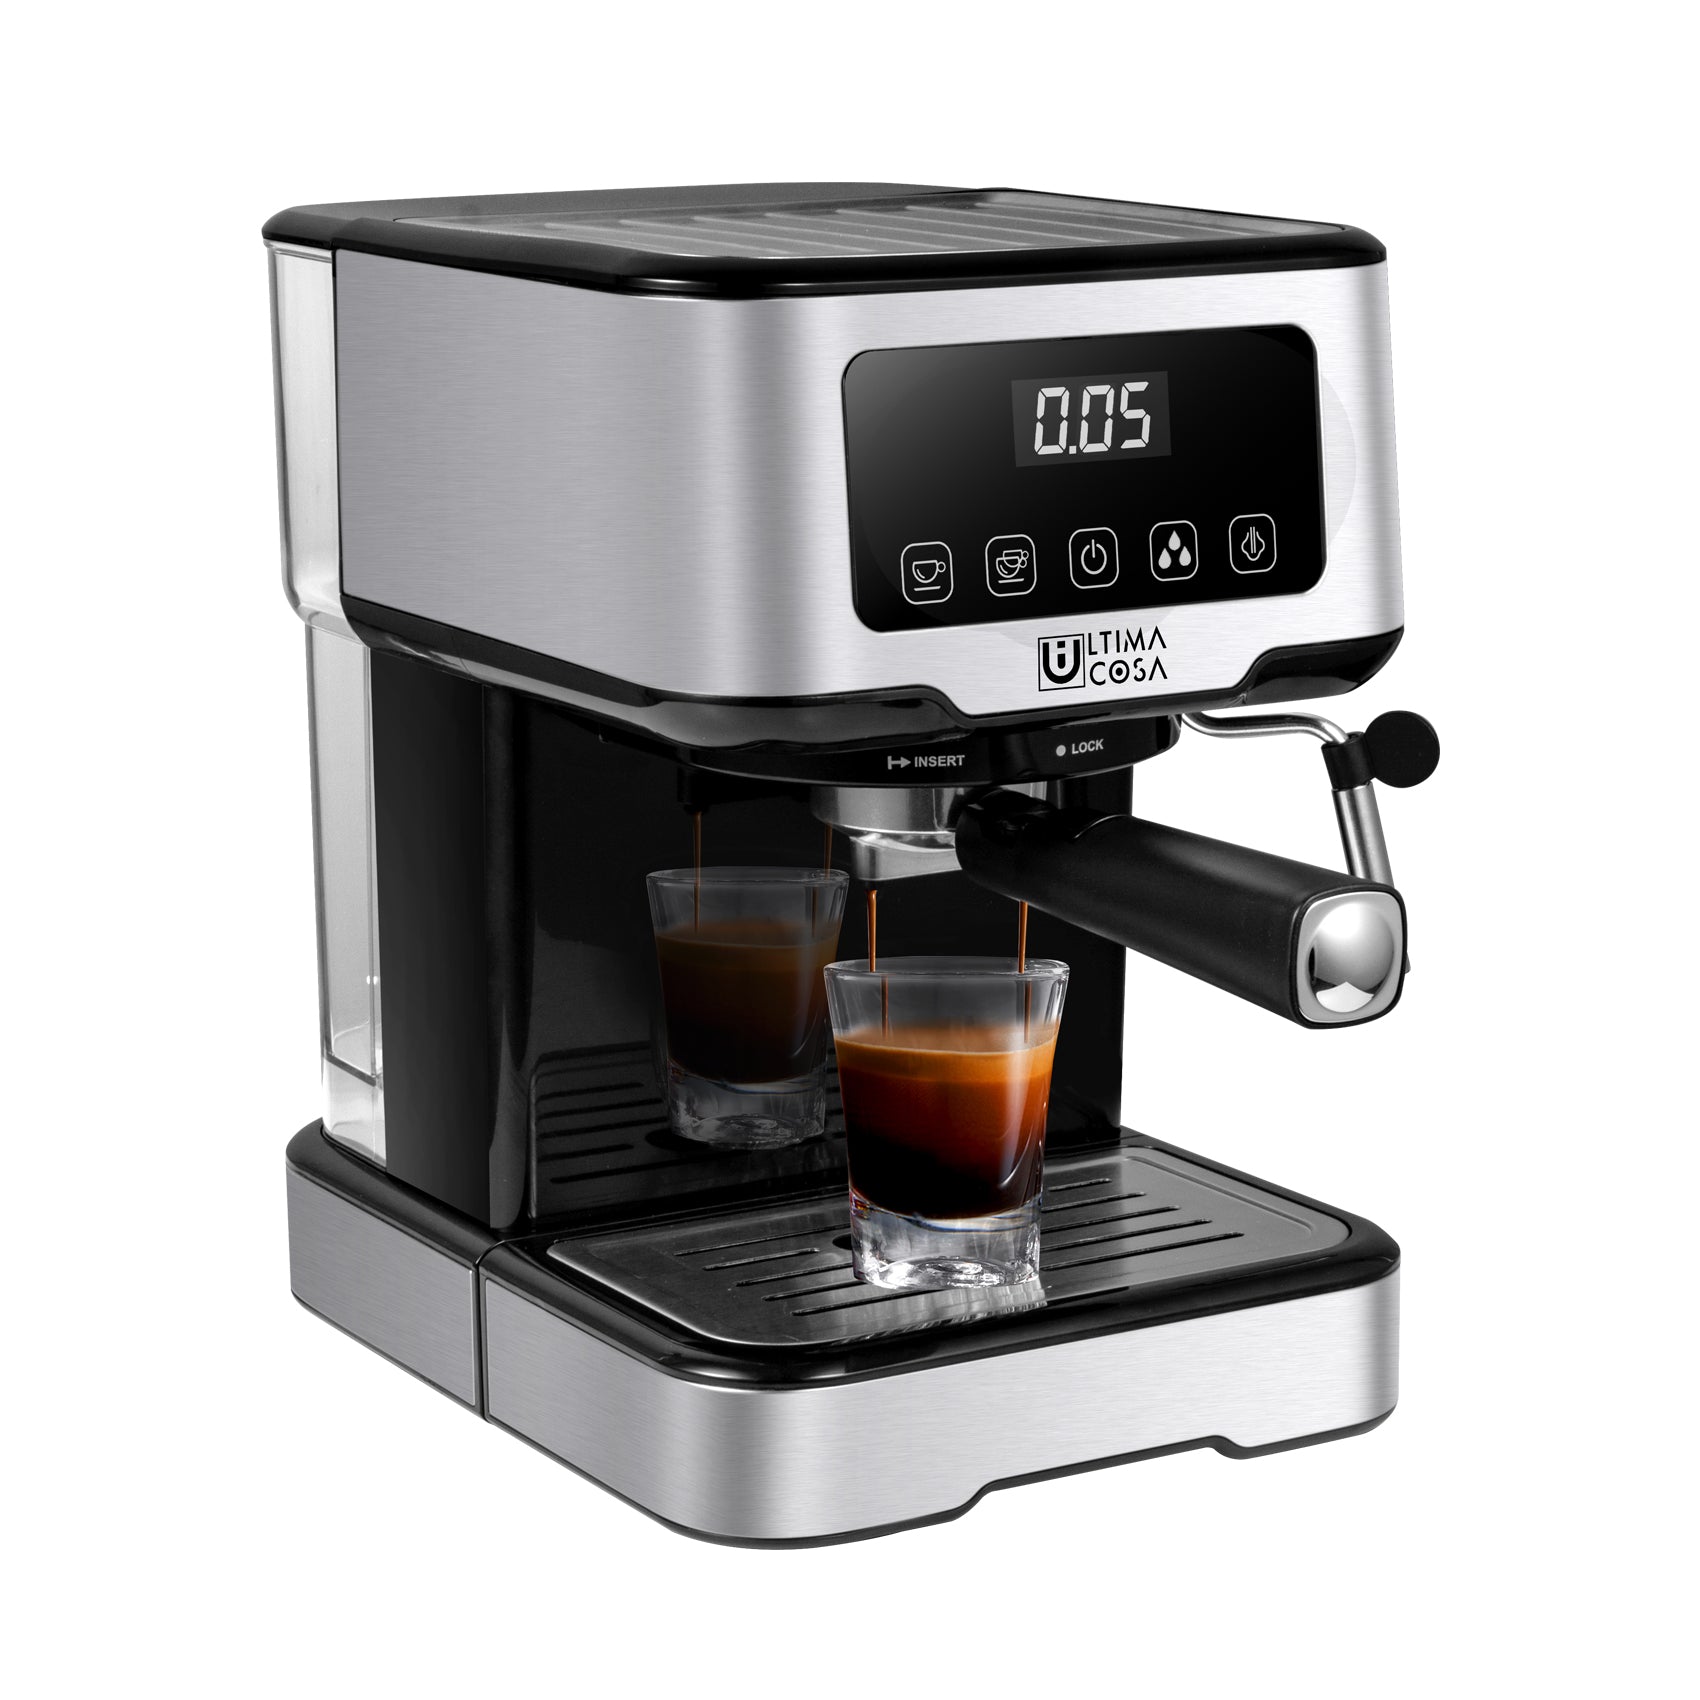 Ultima Cosa New Presto Bollente Semi-Automatic Espresso Machine - Silver -  2 Litre Water Tank - Yahoo Shopping